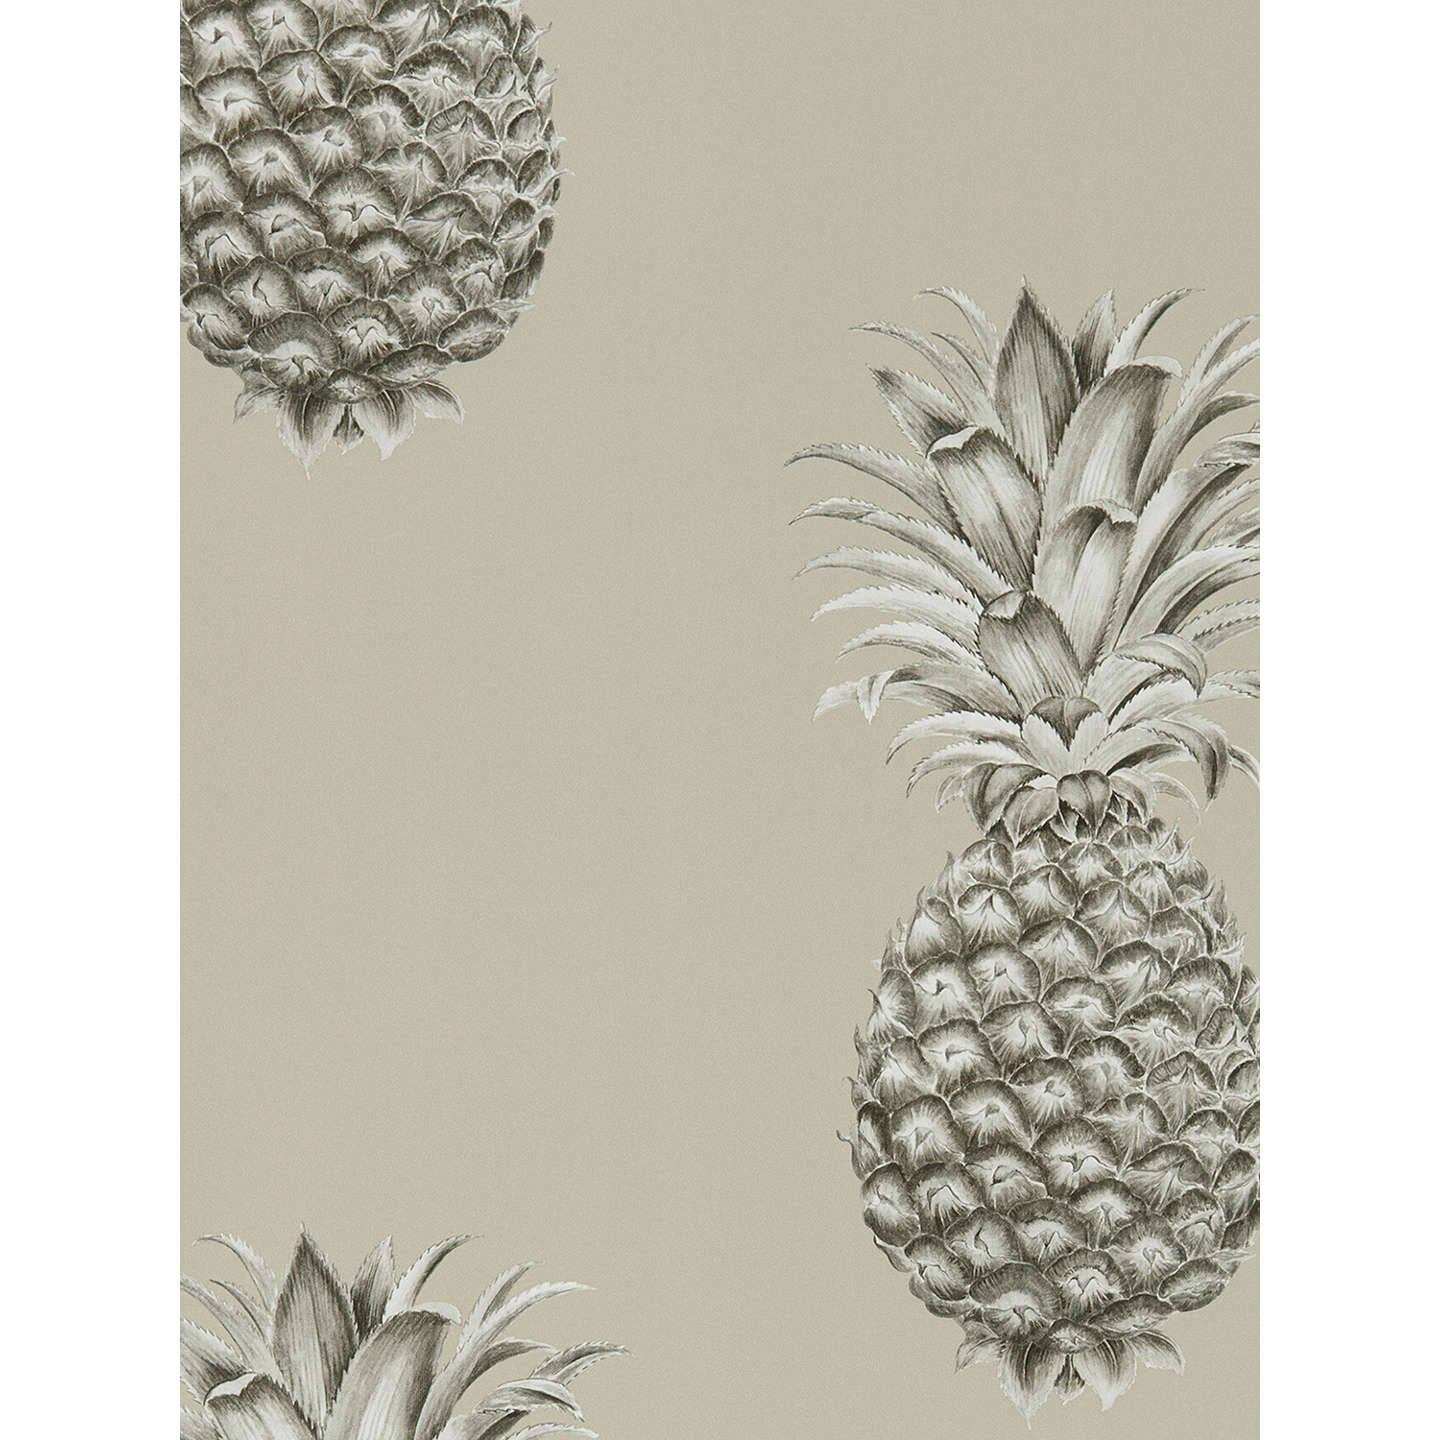 Et tæt skud af en moden ananas, der sender en påmindelse om et sødere liv. Wallpaper